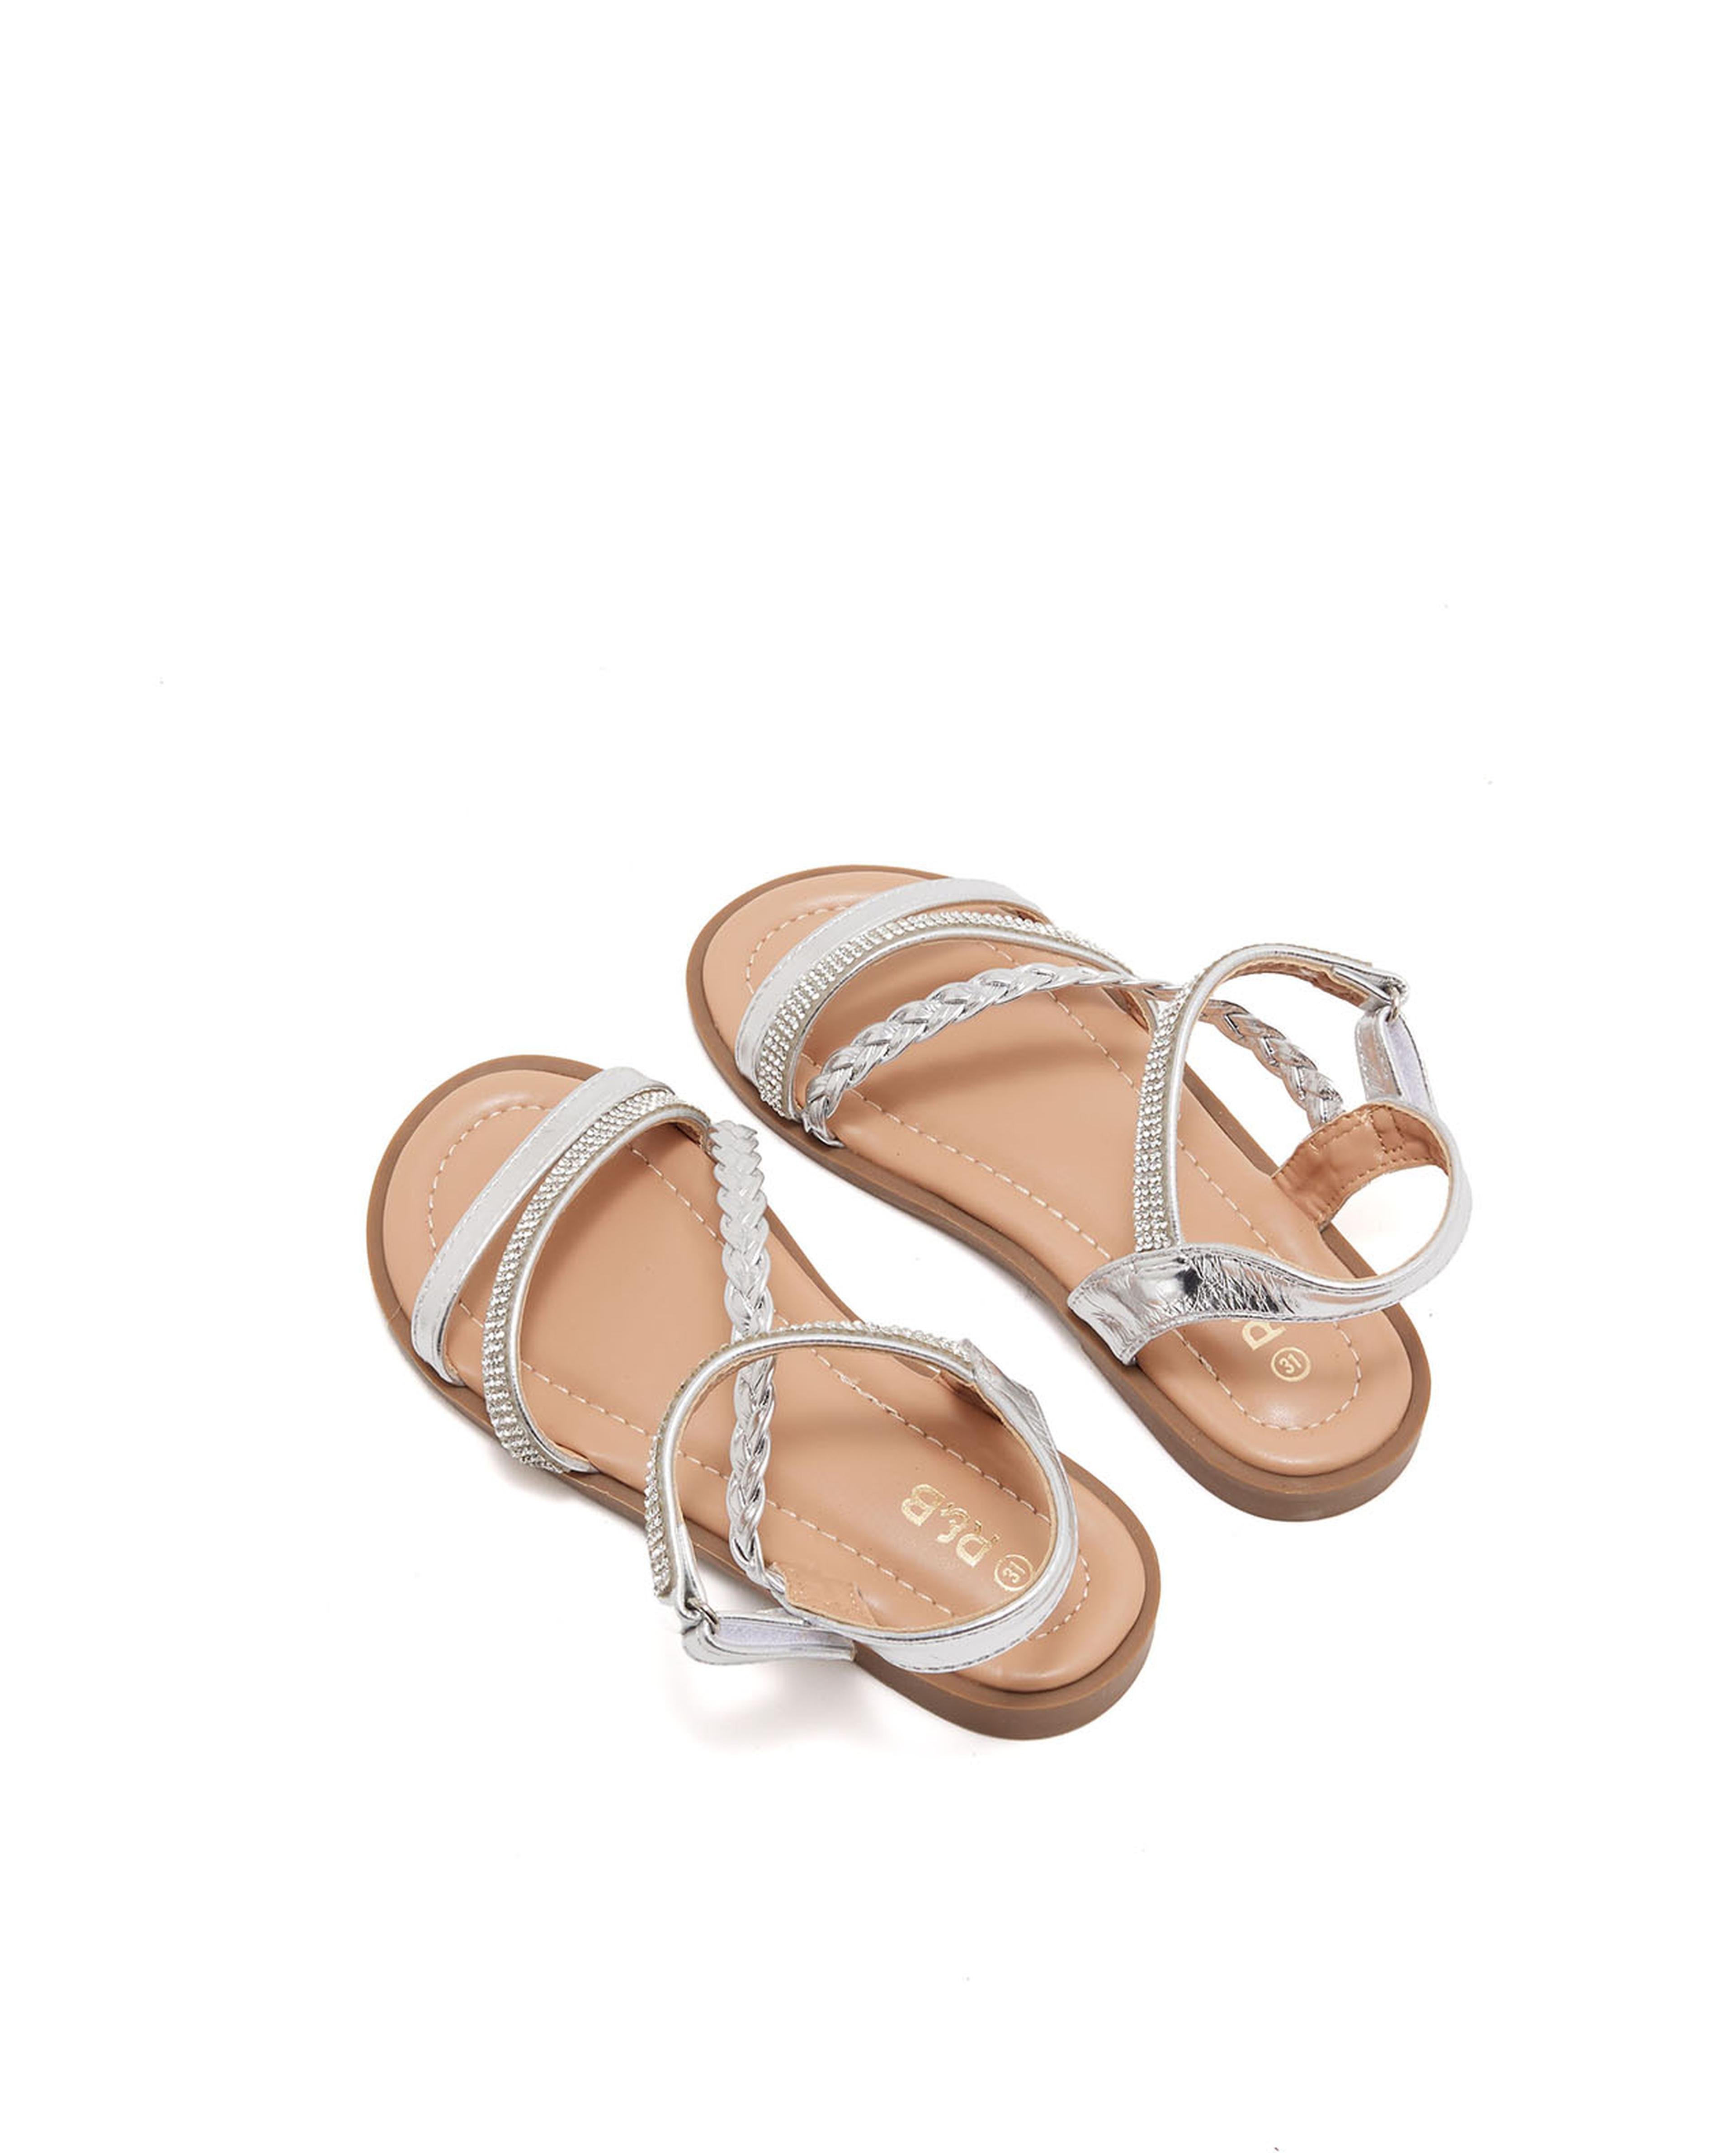 Embellished Comfort Sandals